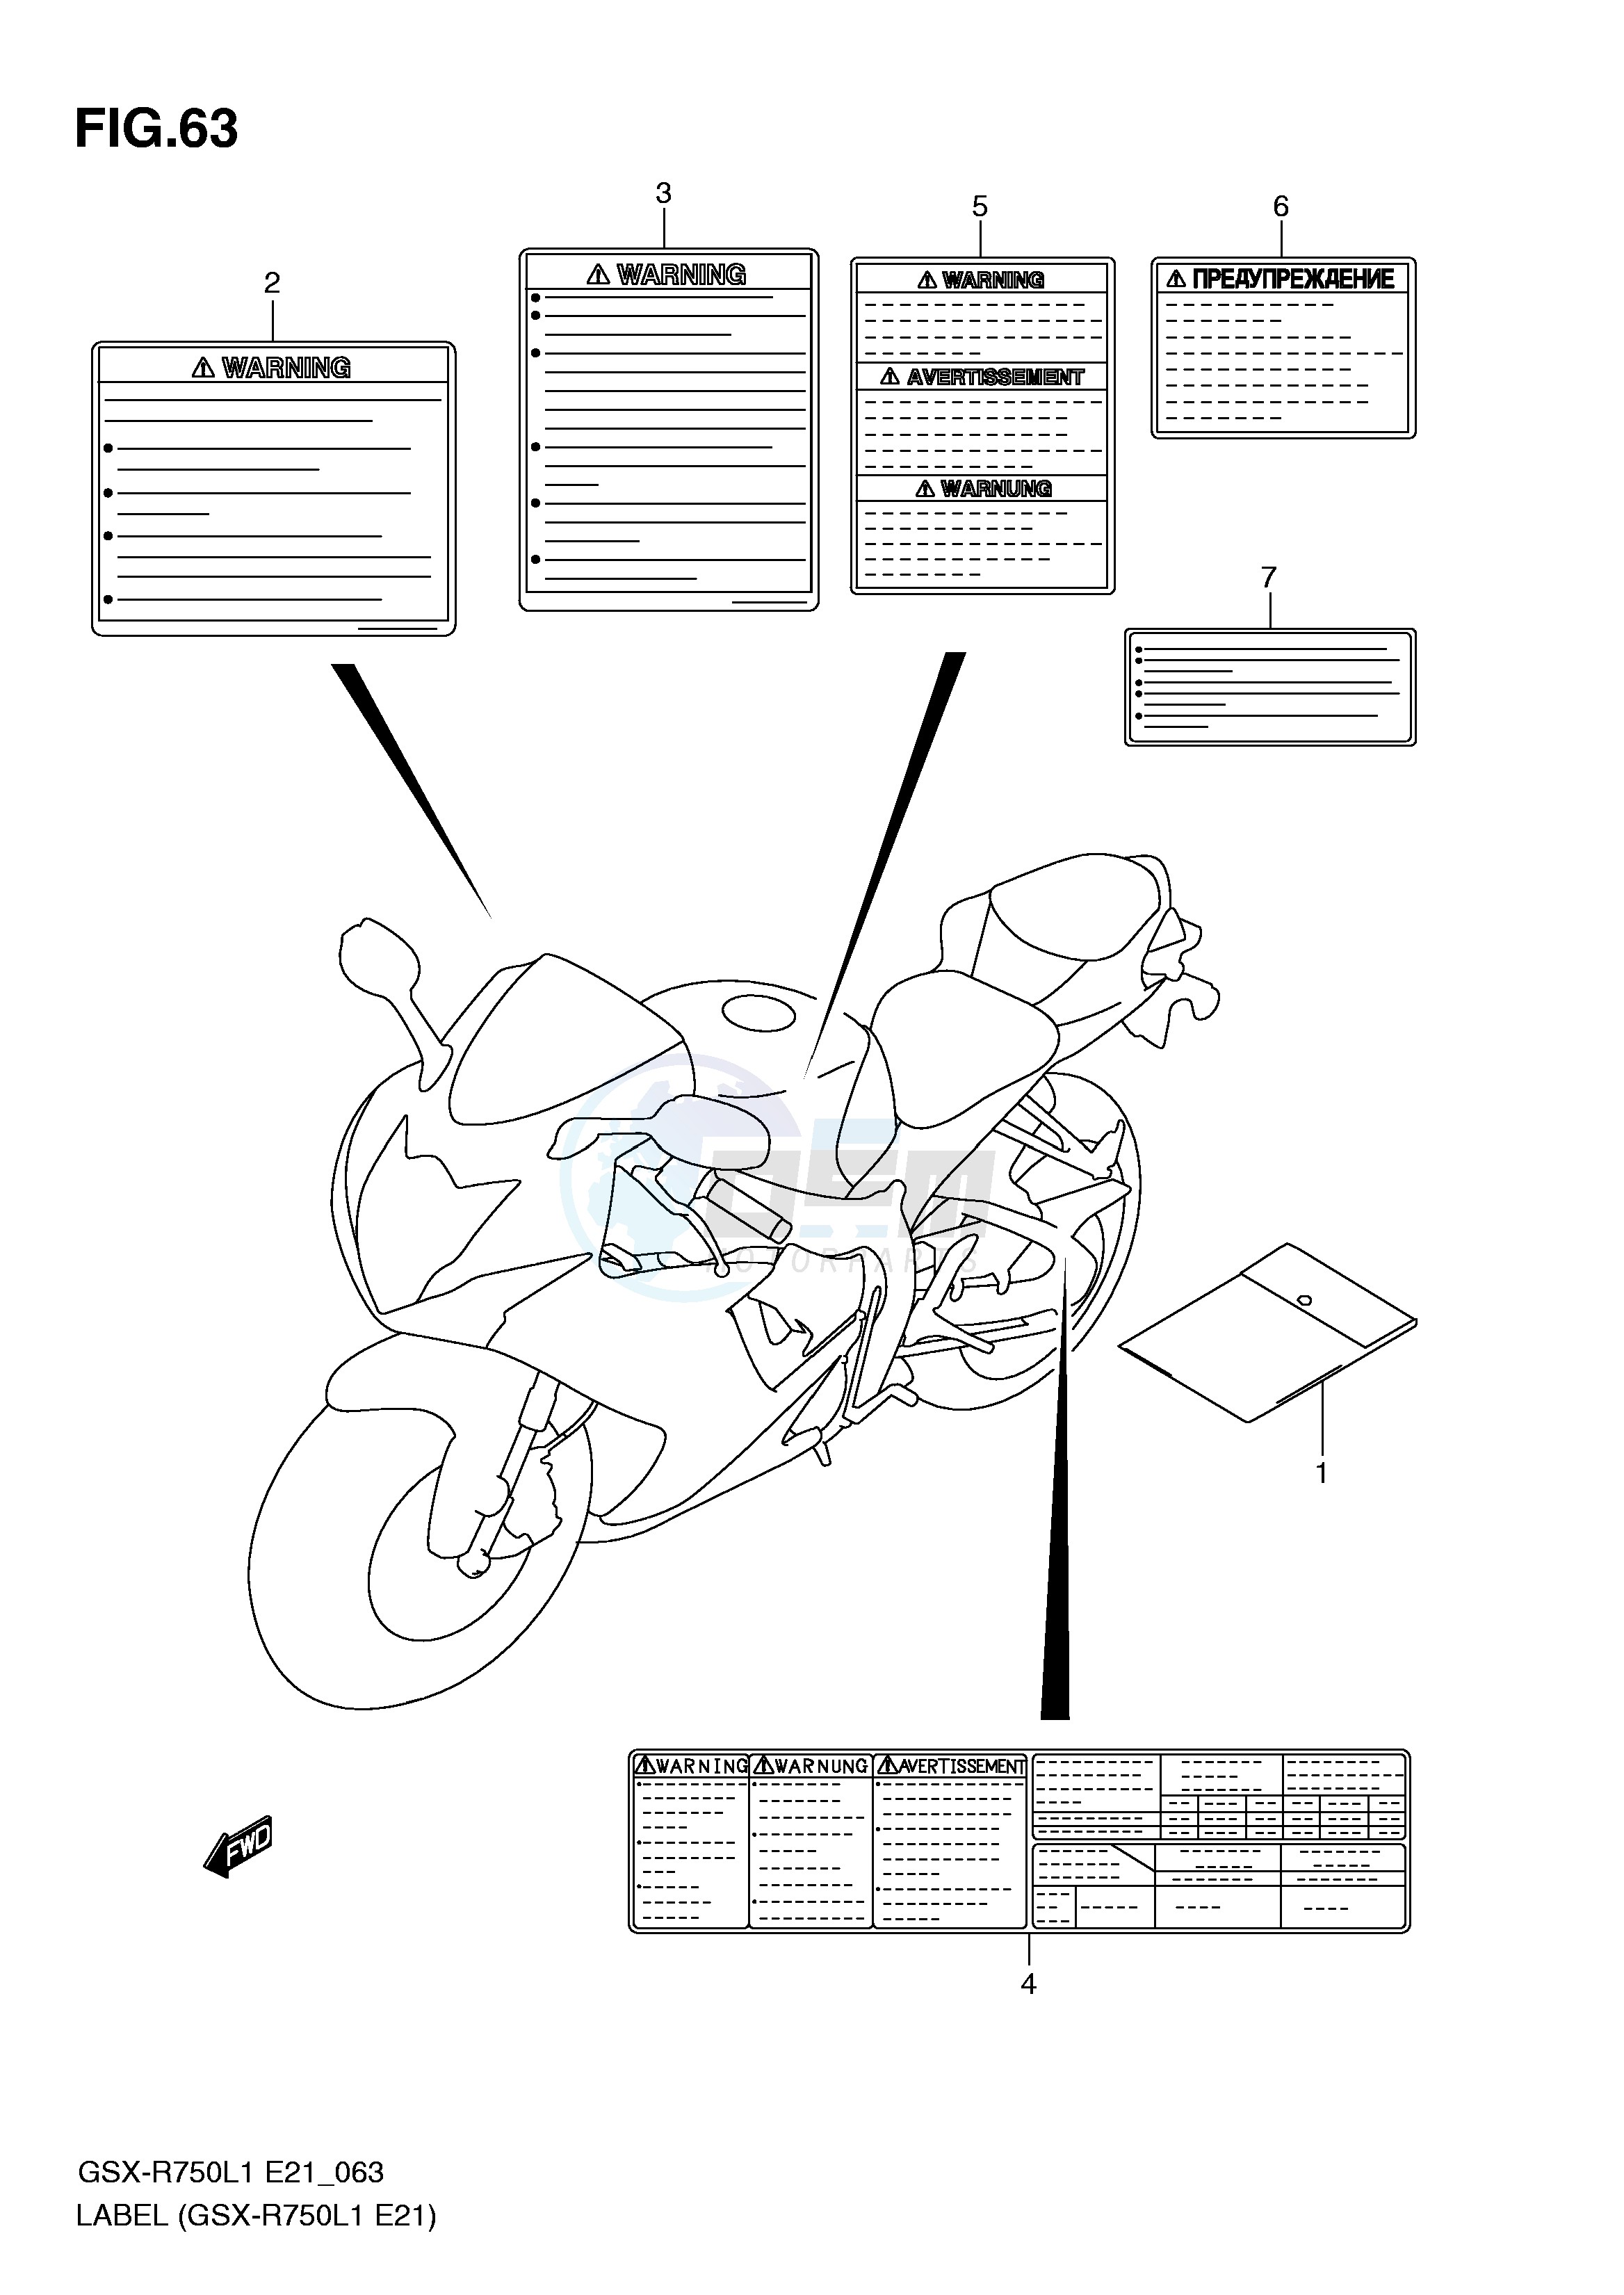 LABEL (GSX-R750L1 E21) blueprint